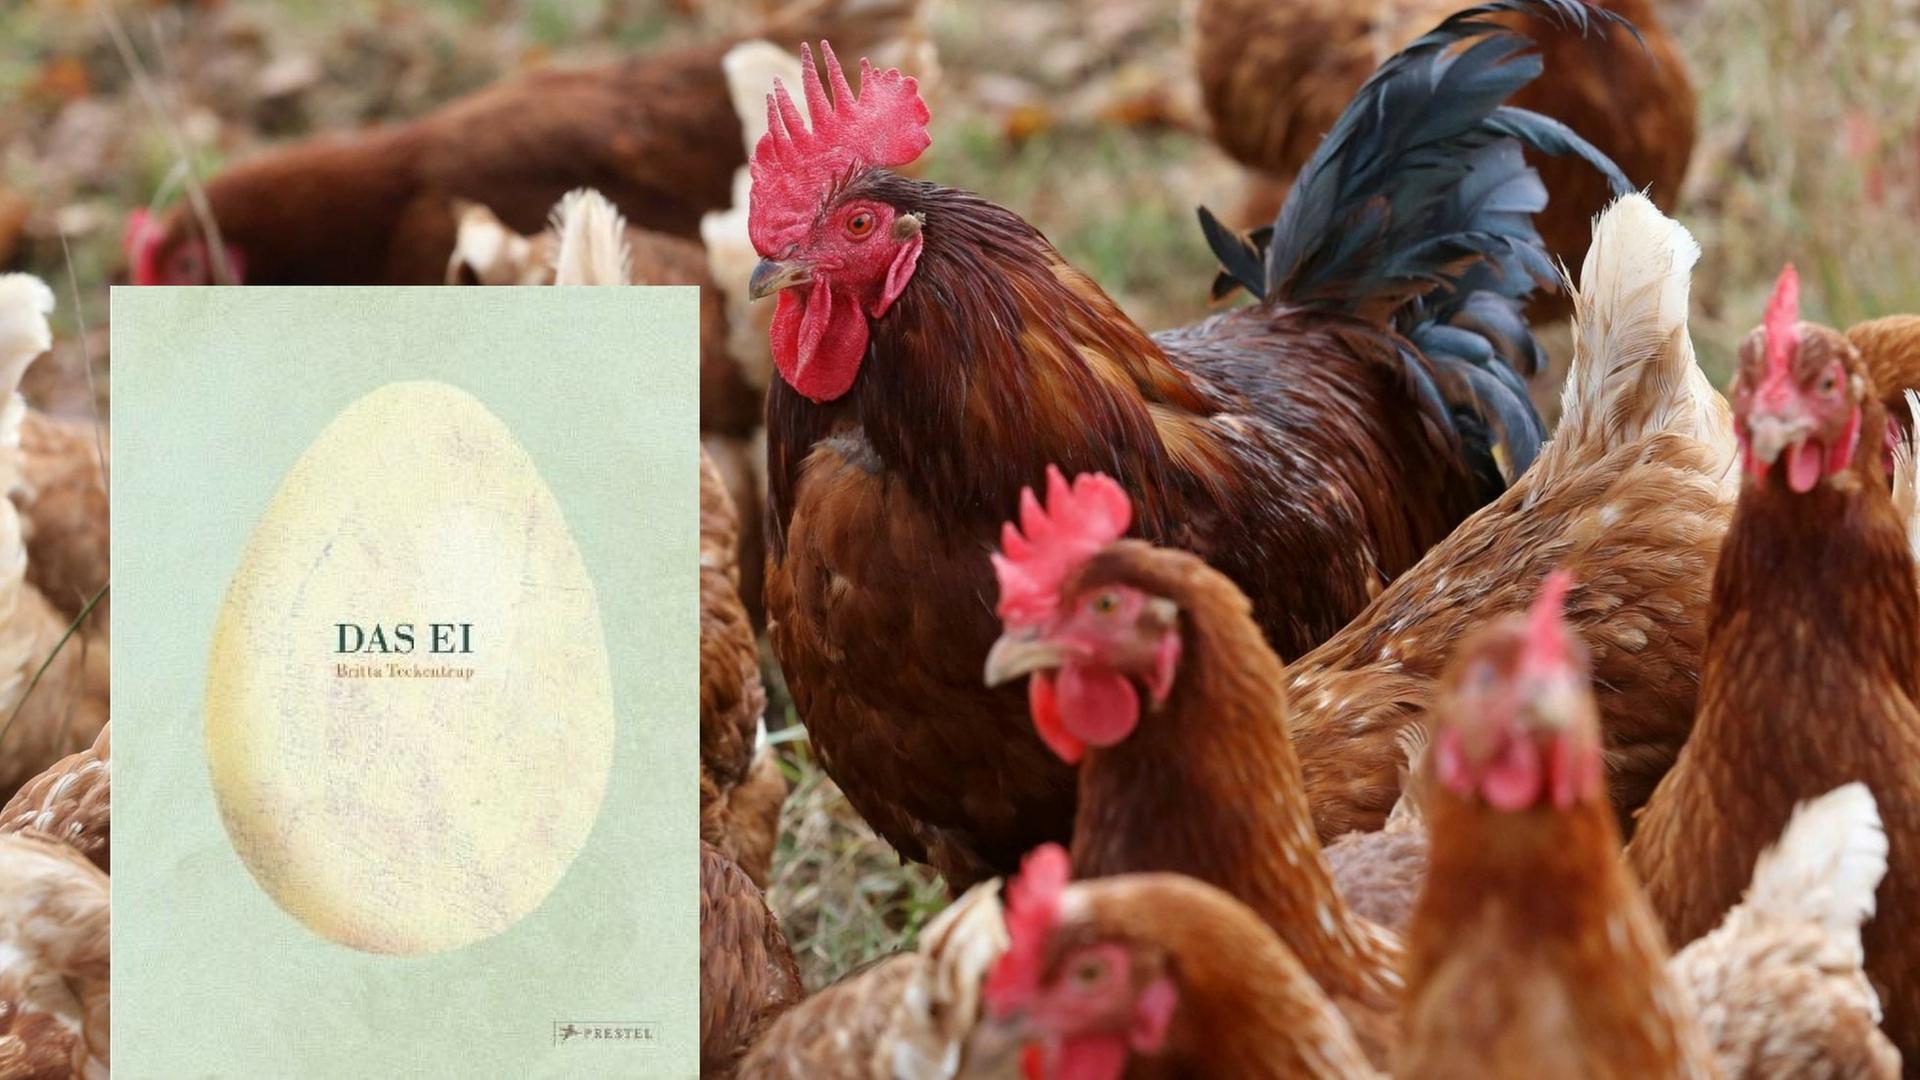 Freilandhühner am Niederrhein und Bildcover "Das Ei" von Britta Teckentru p (Buchkritik)